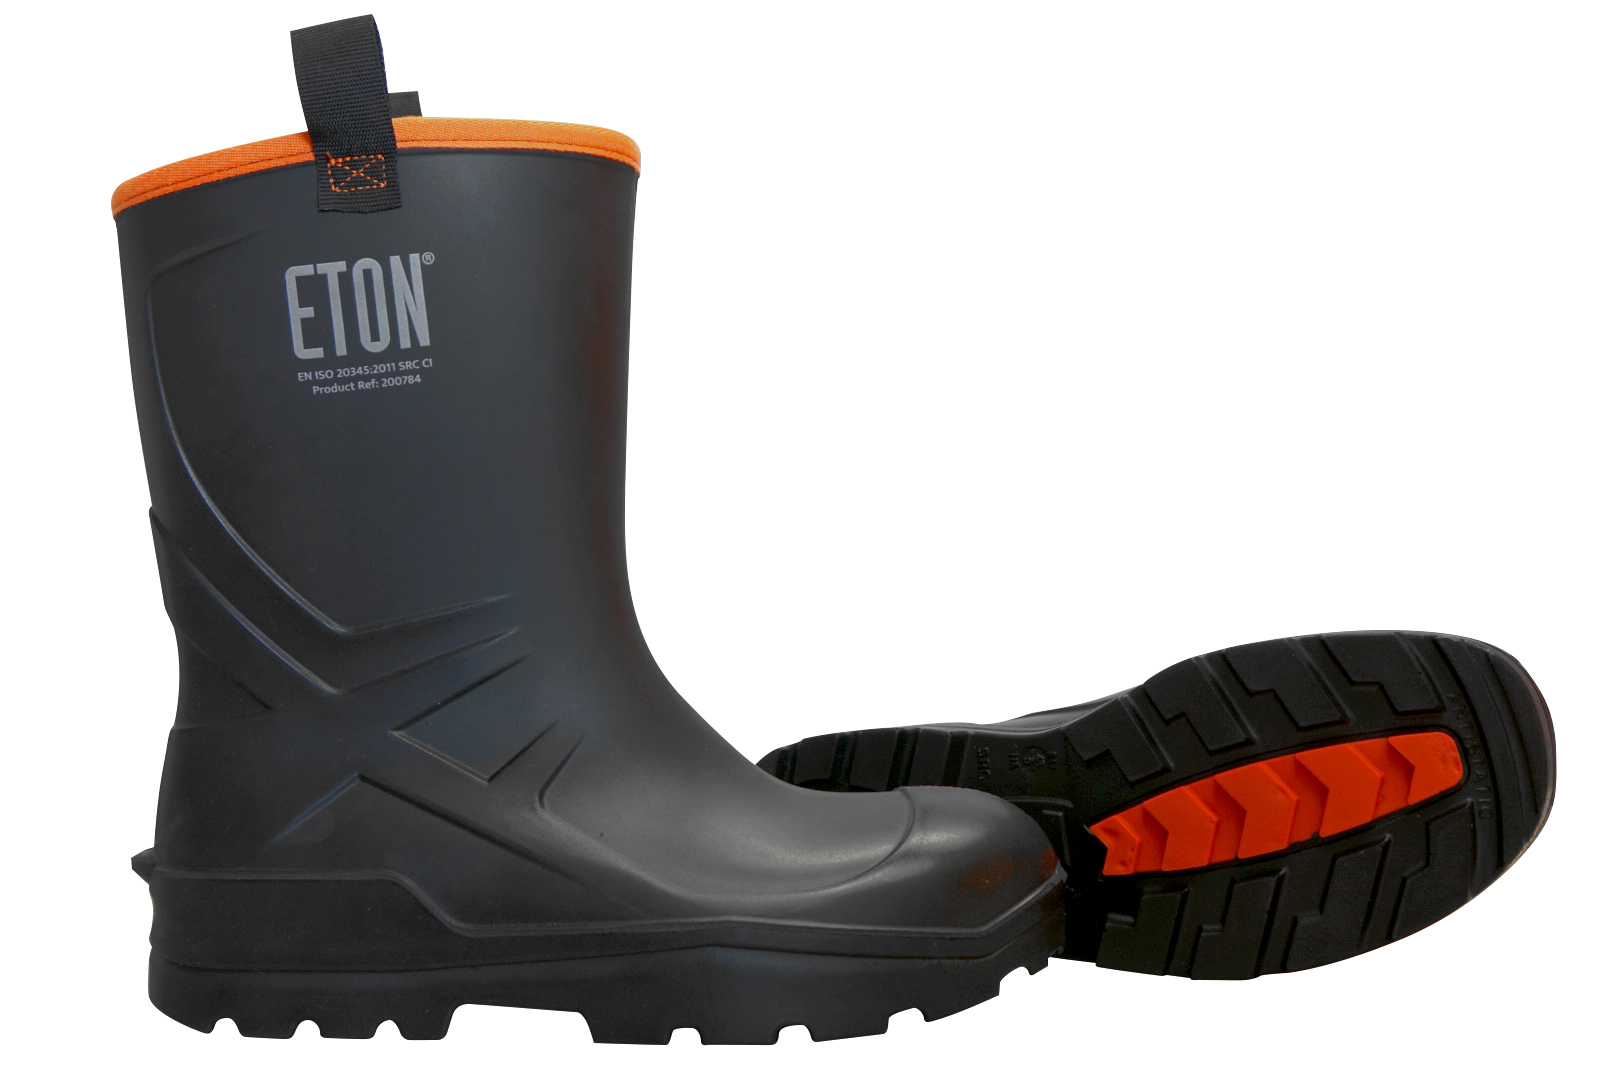 ETON DuraBoot Rigger Full Safety Boot - Black, Size 3.5